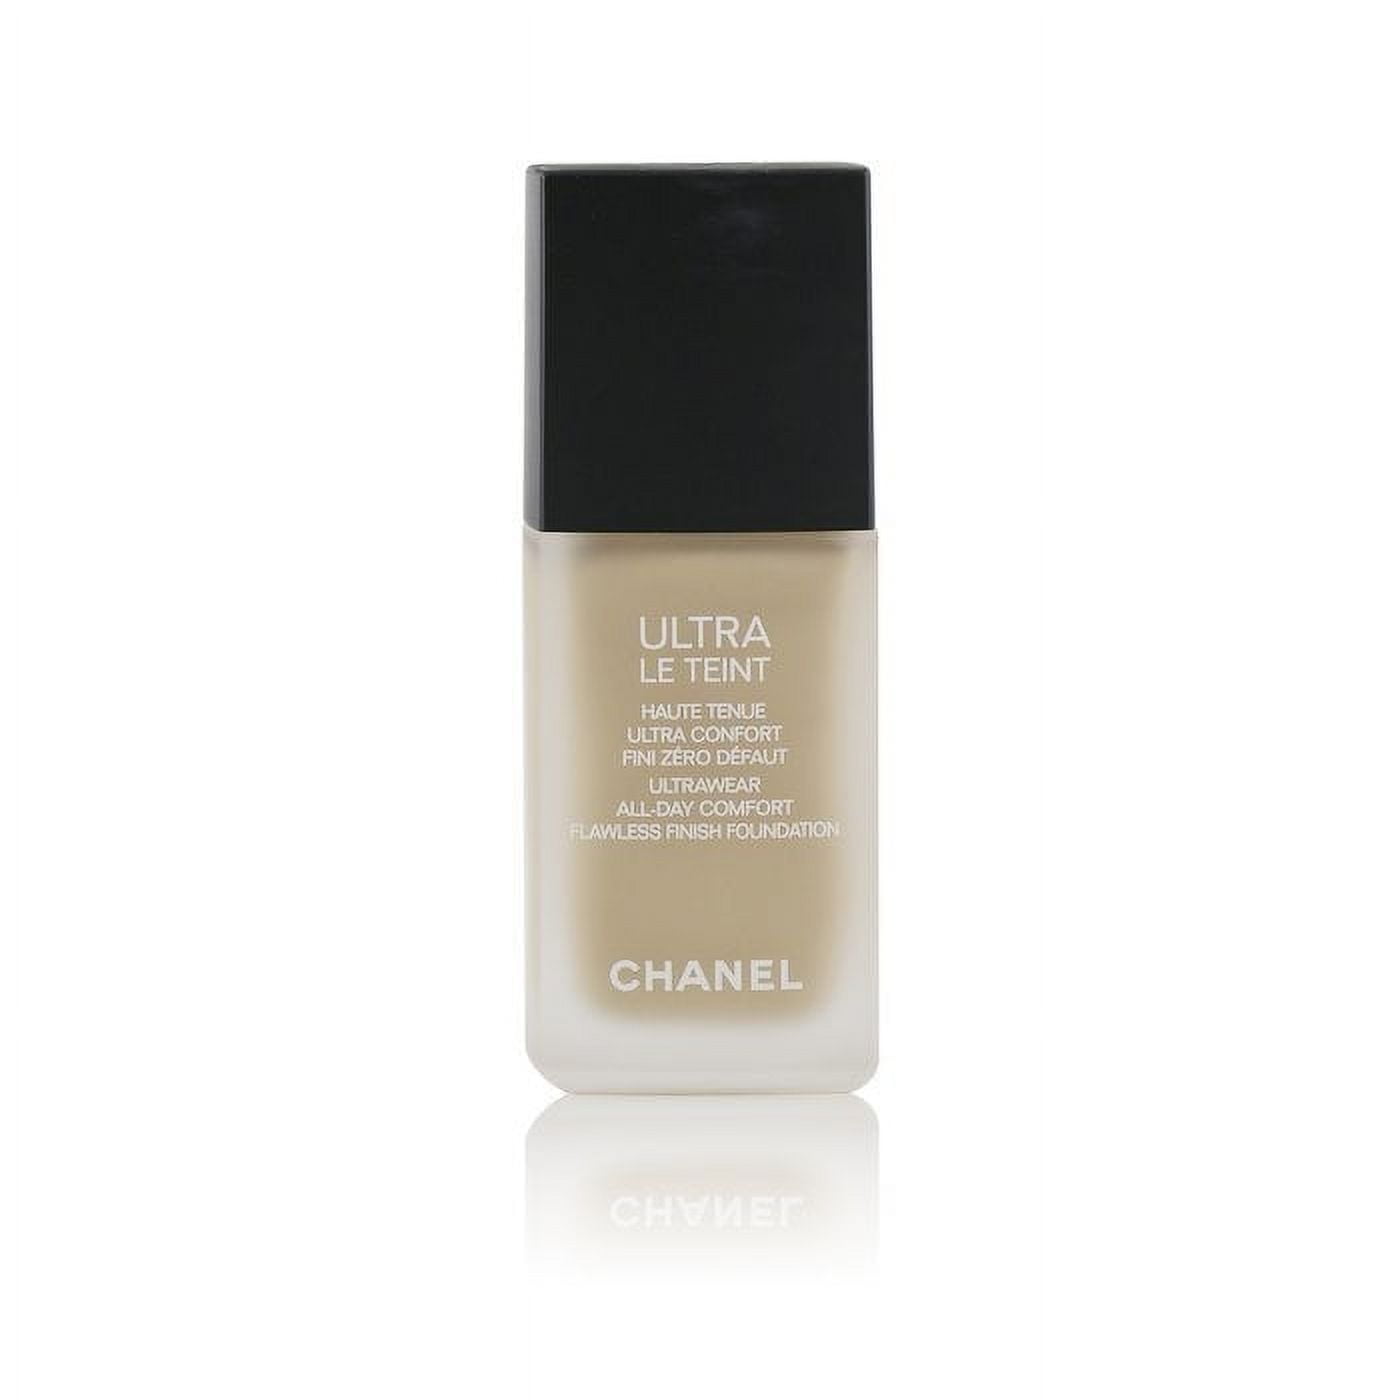 Chanel ULTRA LE TEINT Ultrawear All-Day Comfort Flawless Finish Foundation  1.0 oz / 30 ml (B40)